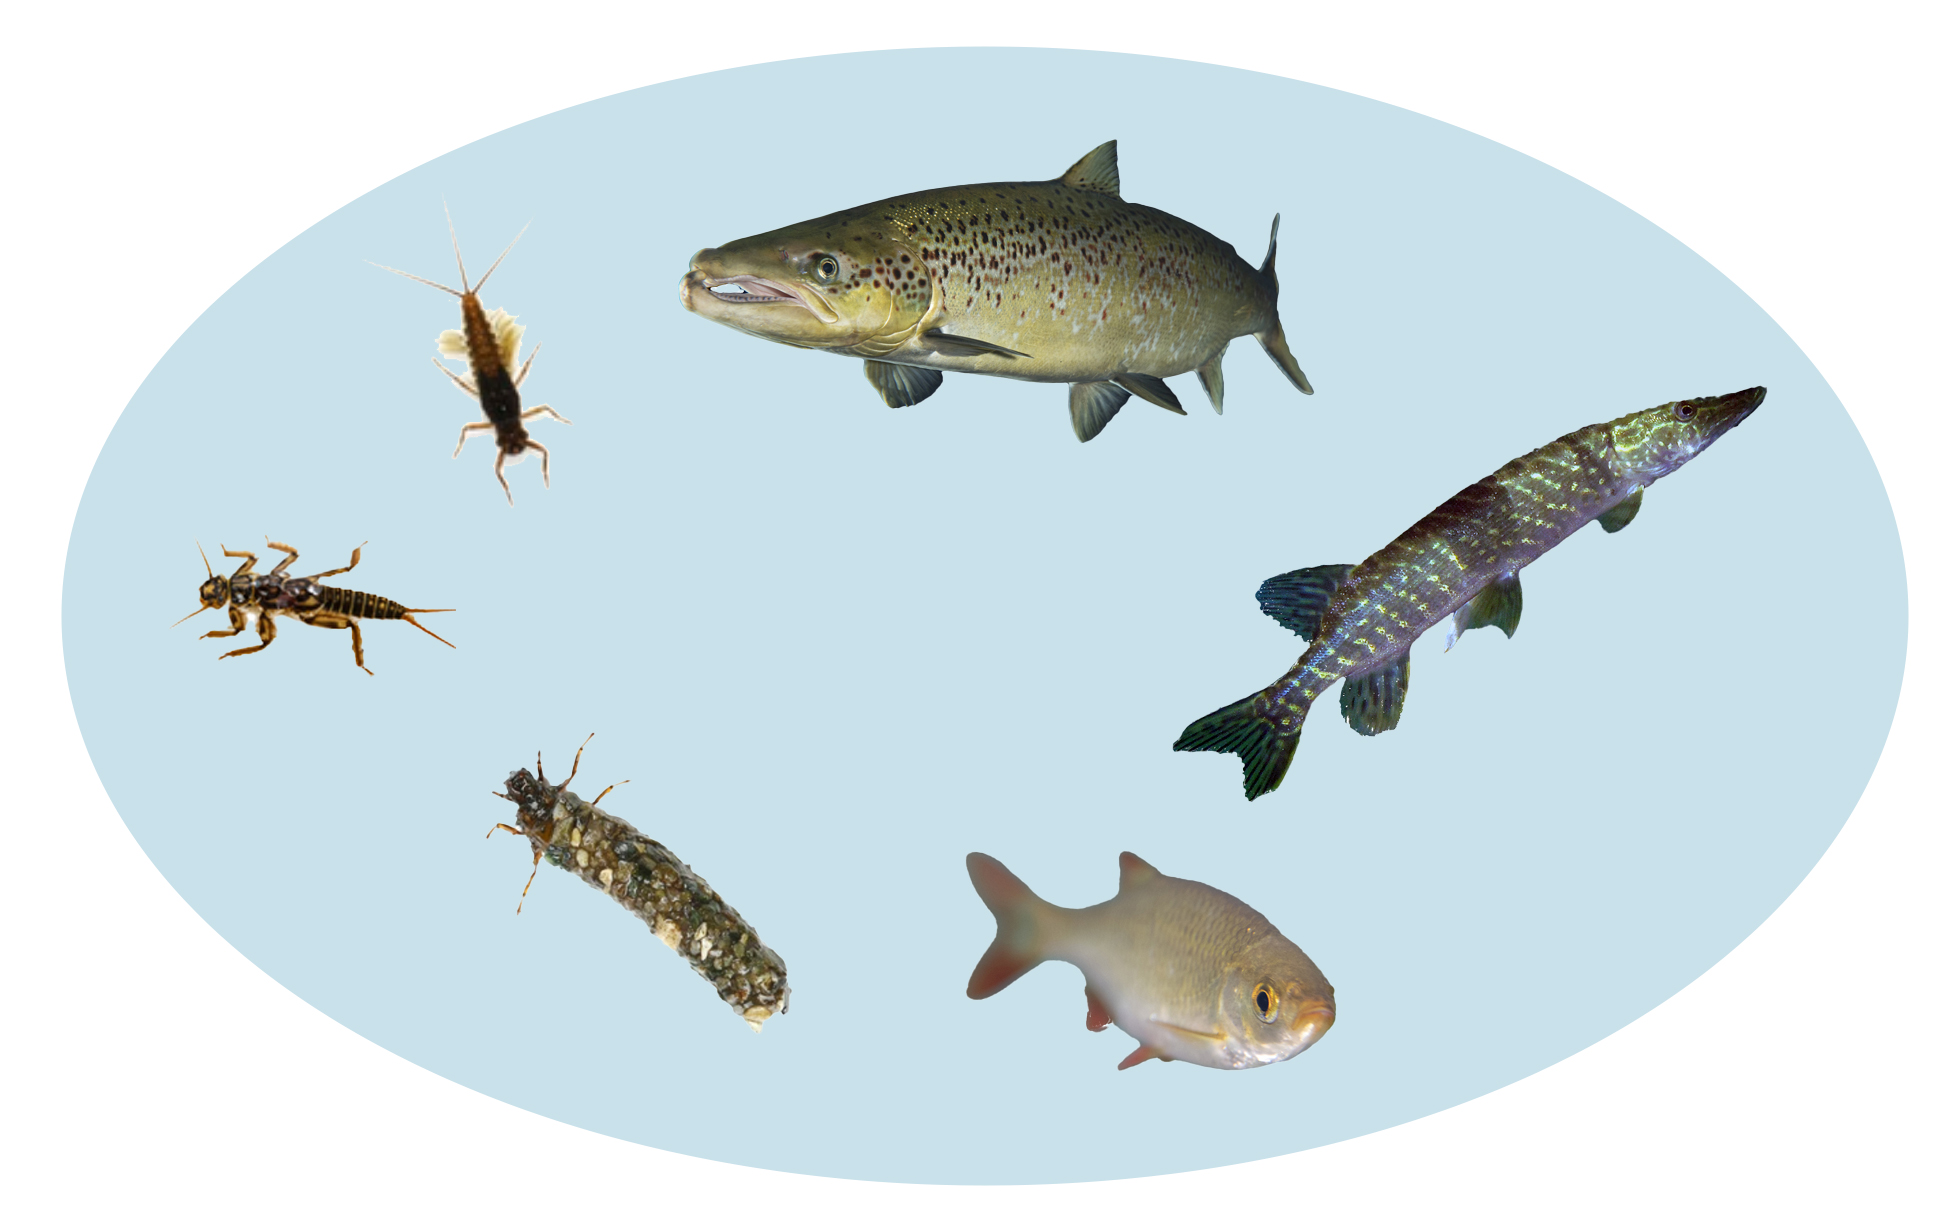 Examples of aquatic organisms.